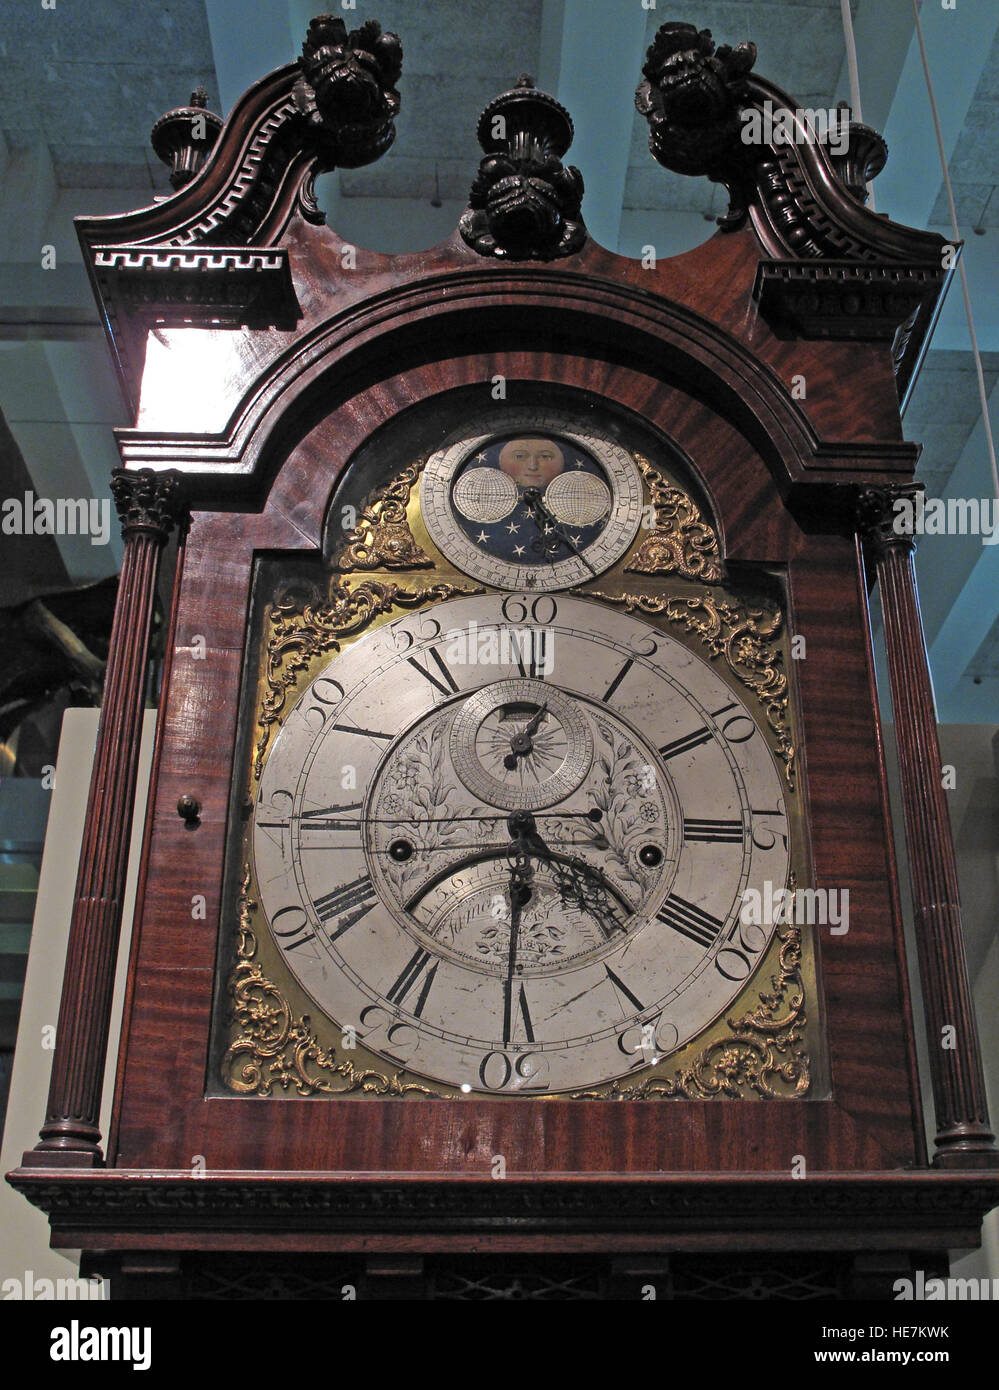 Horloge Grand-père à l'intérieur, faite à Belfast, Irlande du Nord, Royaume-Uni Banque D'Images